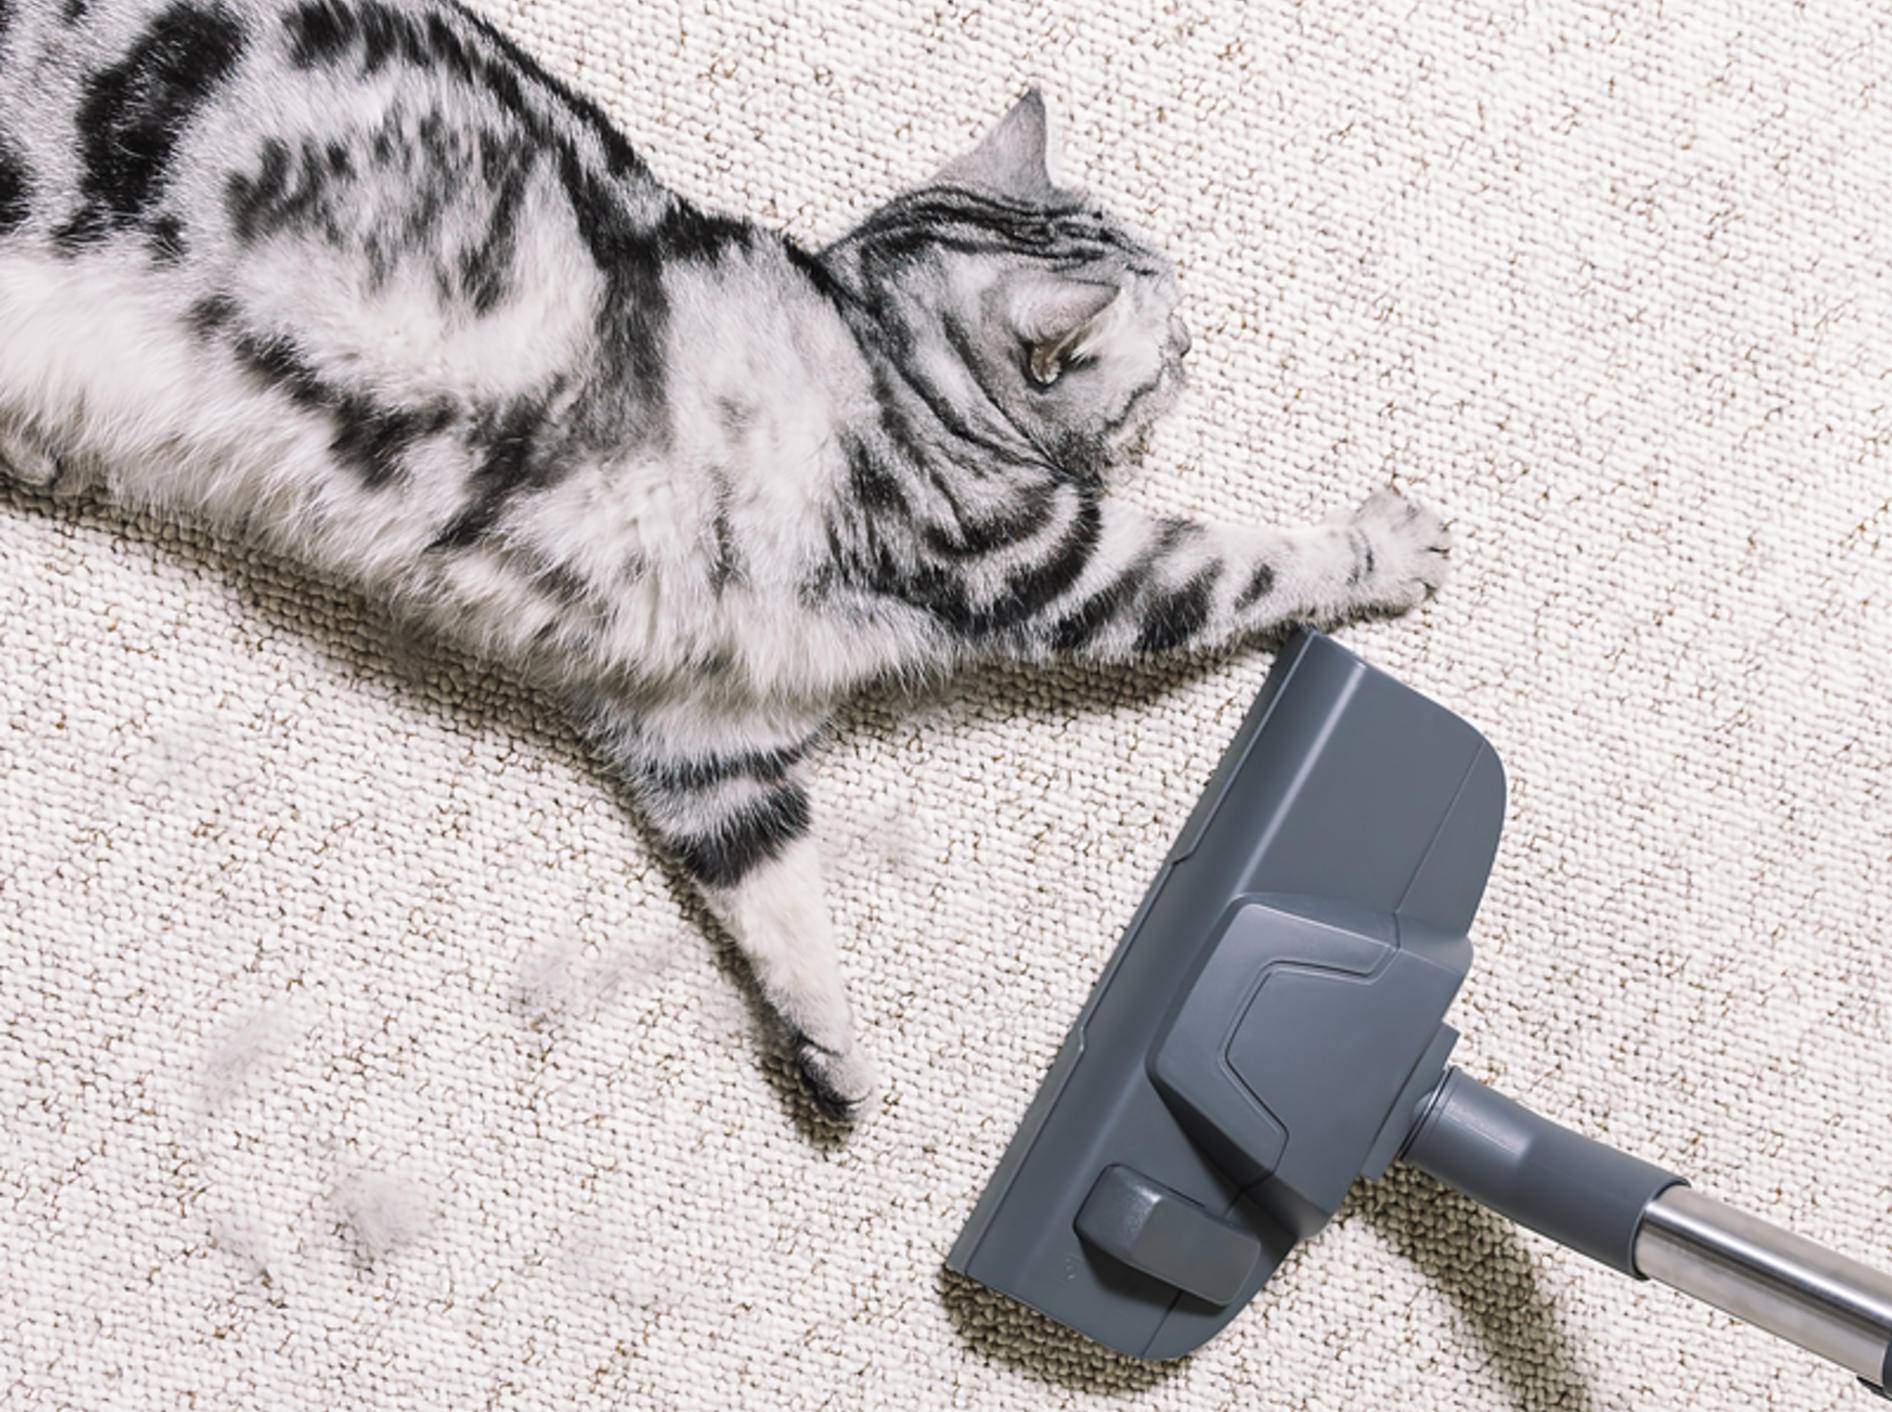 Viele Katzen haben Respekt vor dem "Staubsaugmonster" - Bild: Shutterstock / Mr_Mrs_Marcha